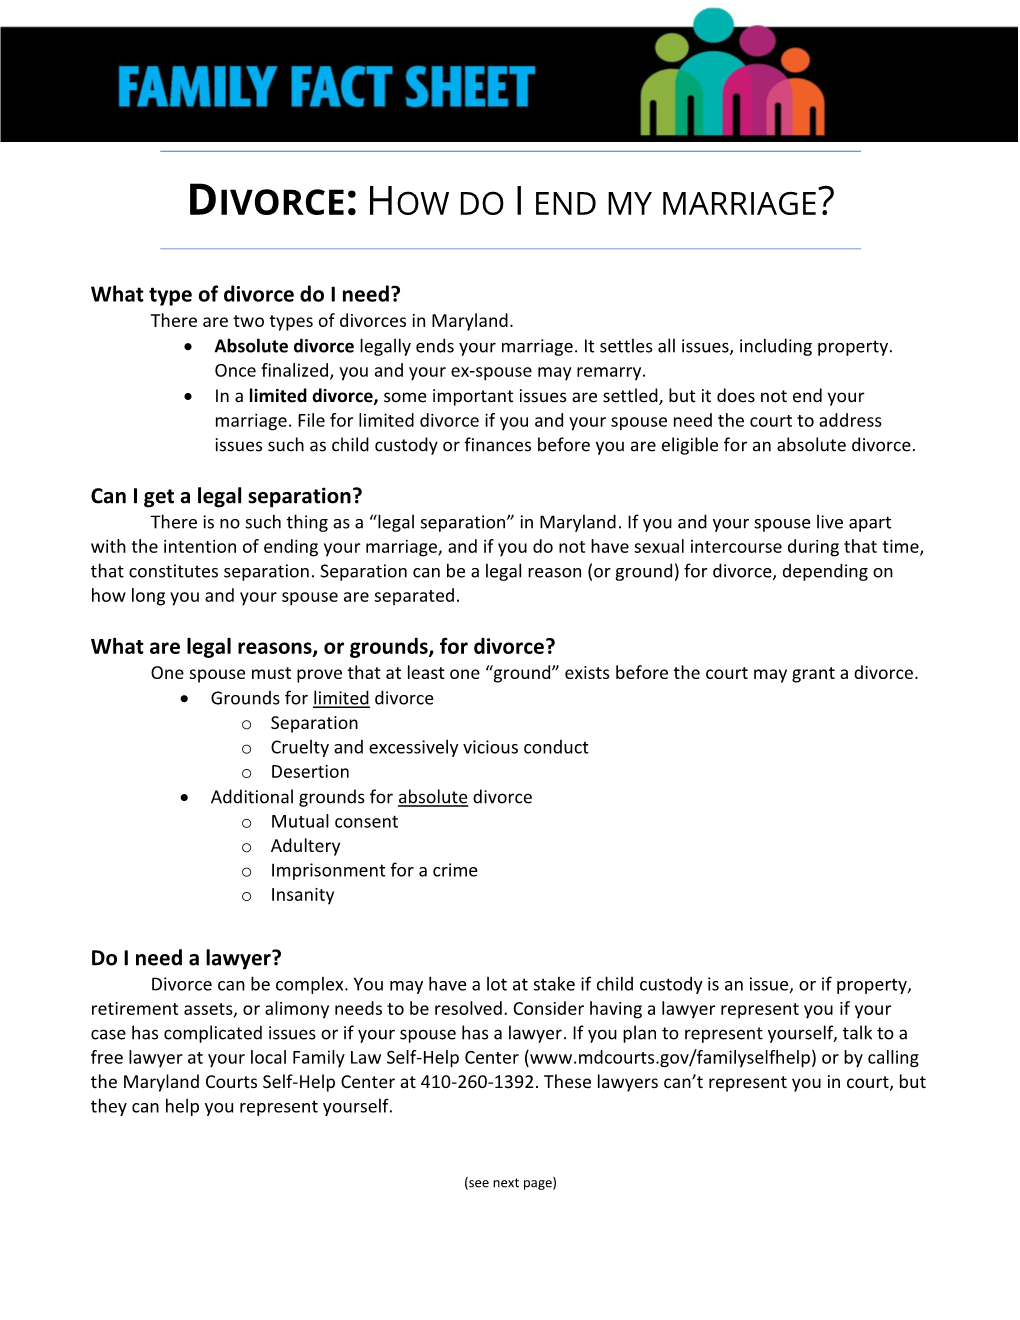 Divorce-Fact Sheet